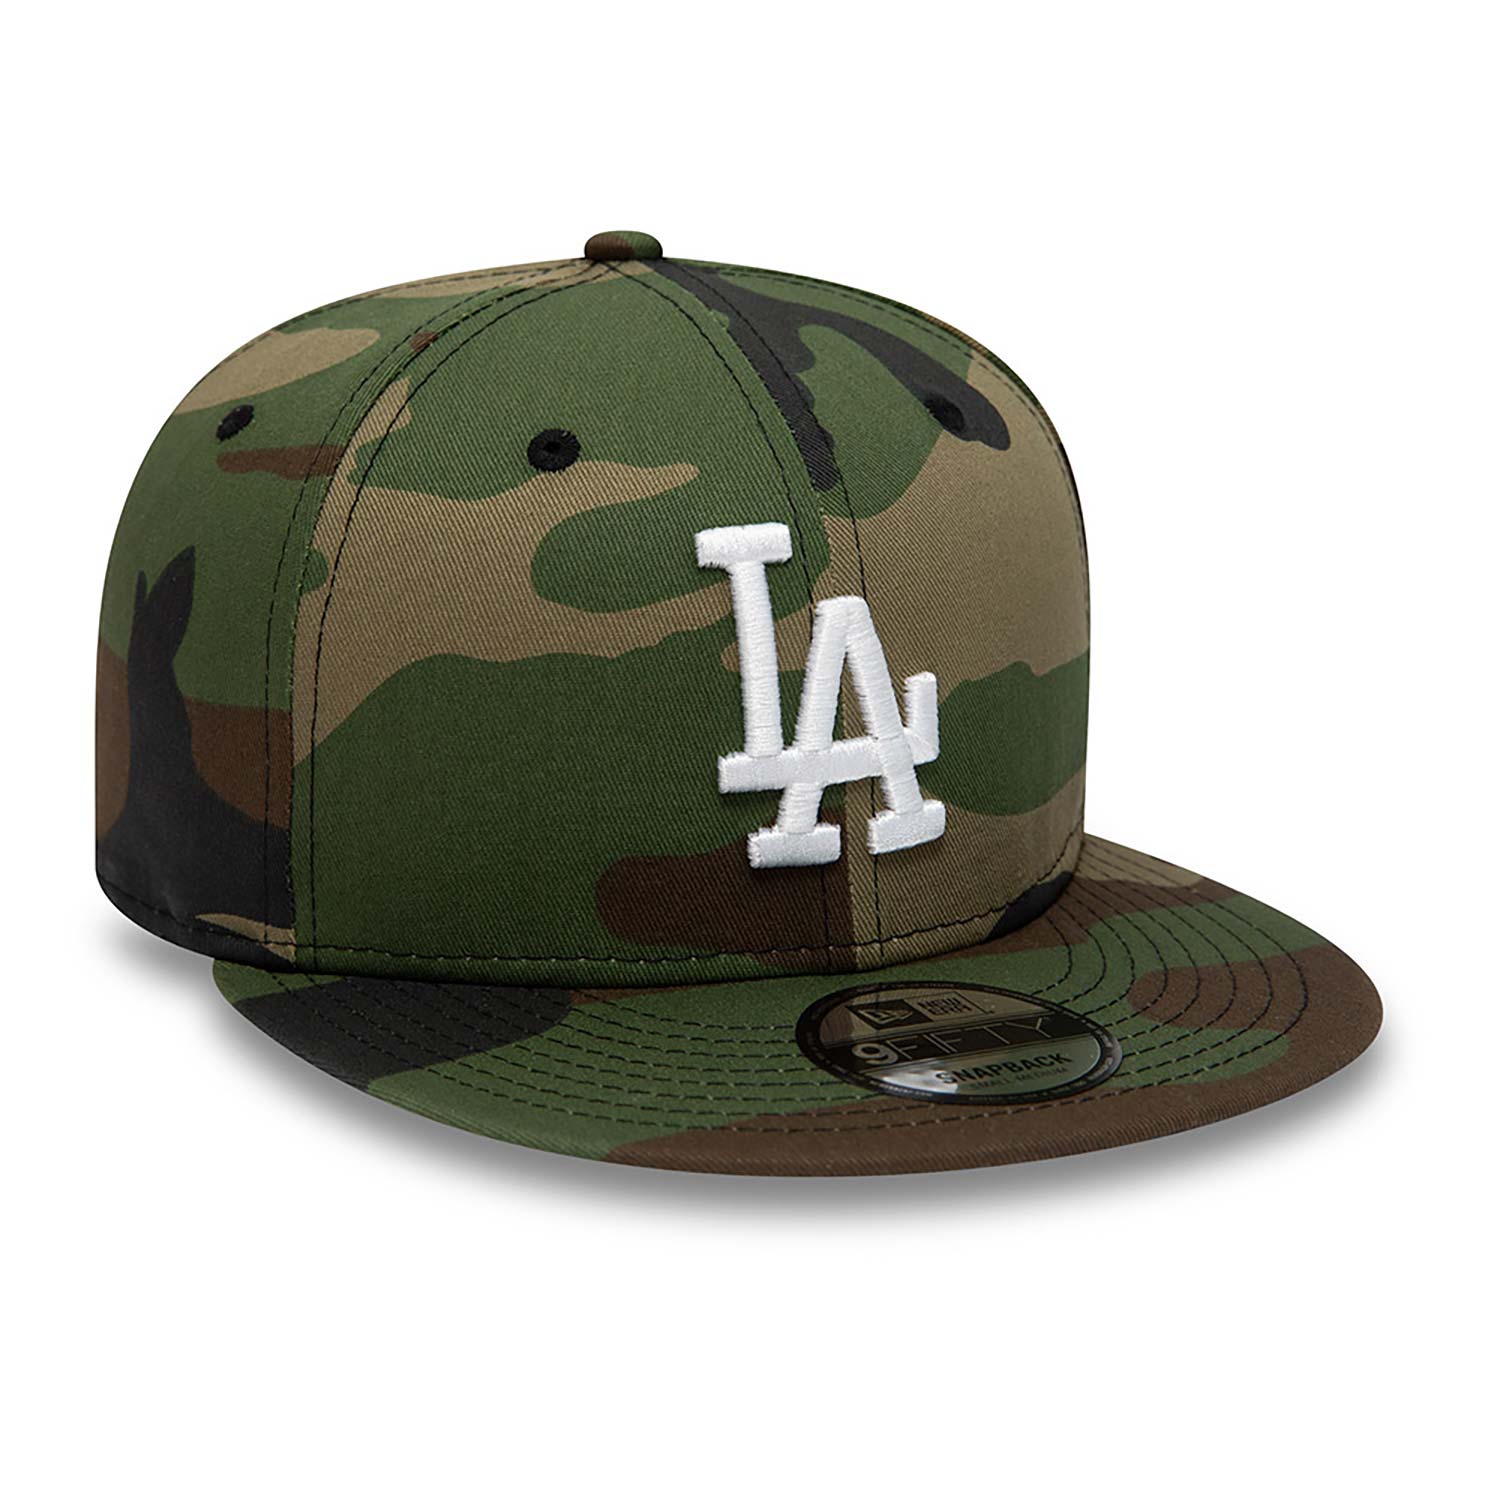 LA Dodgers Team Camo 9FIFTY Snapback Cap